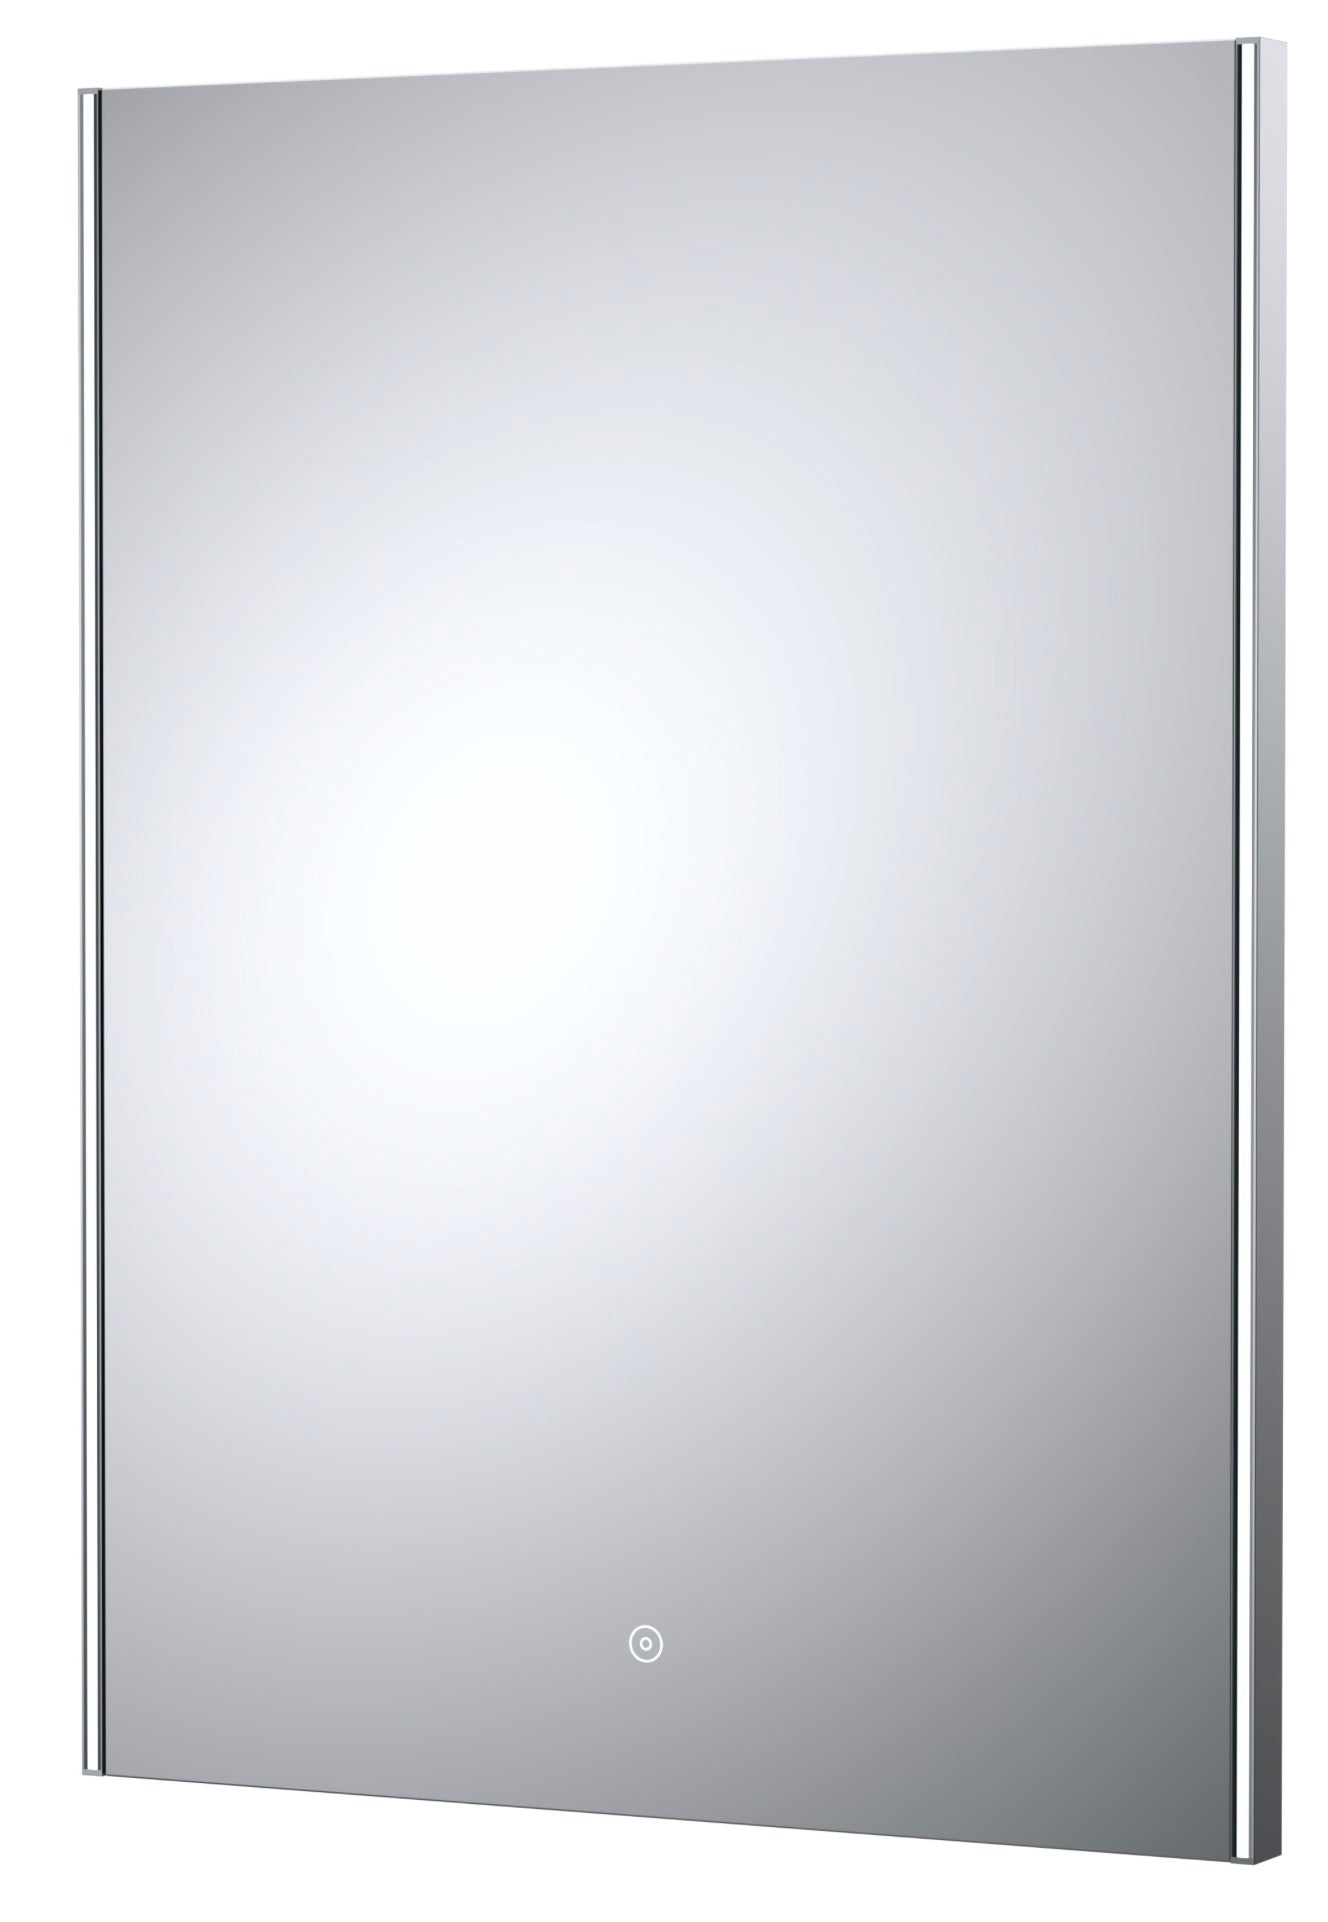 Mirrors - Cepheus Ambient 800x600